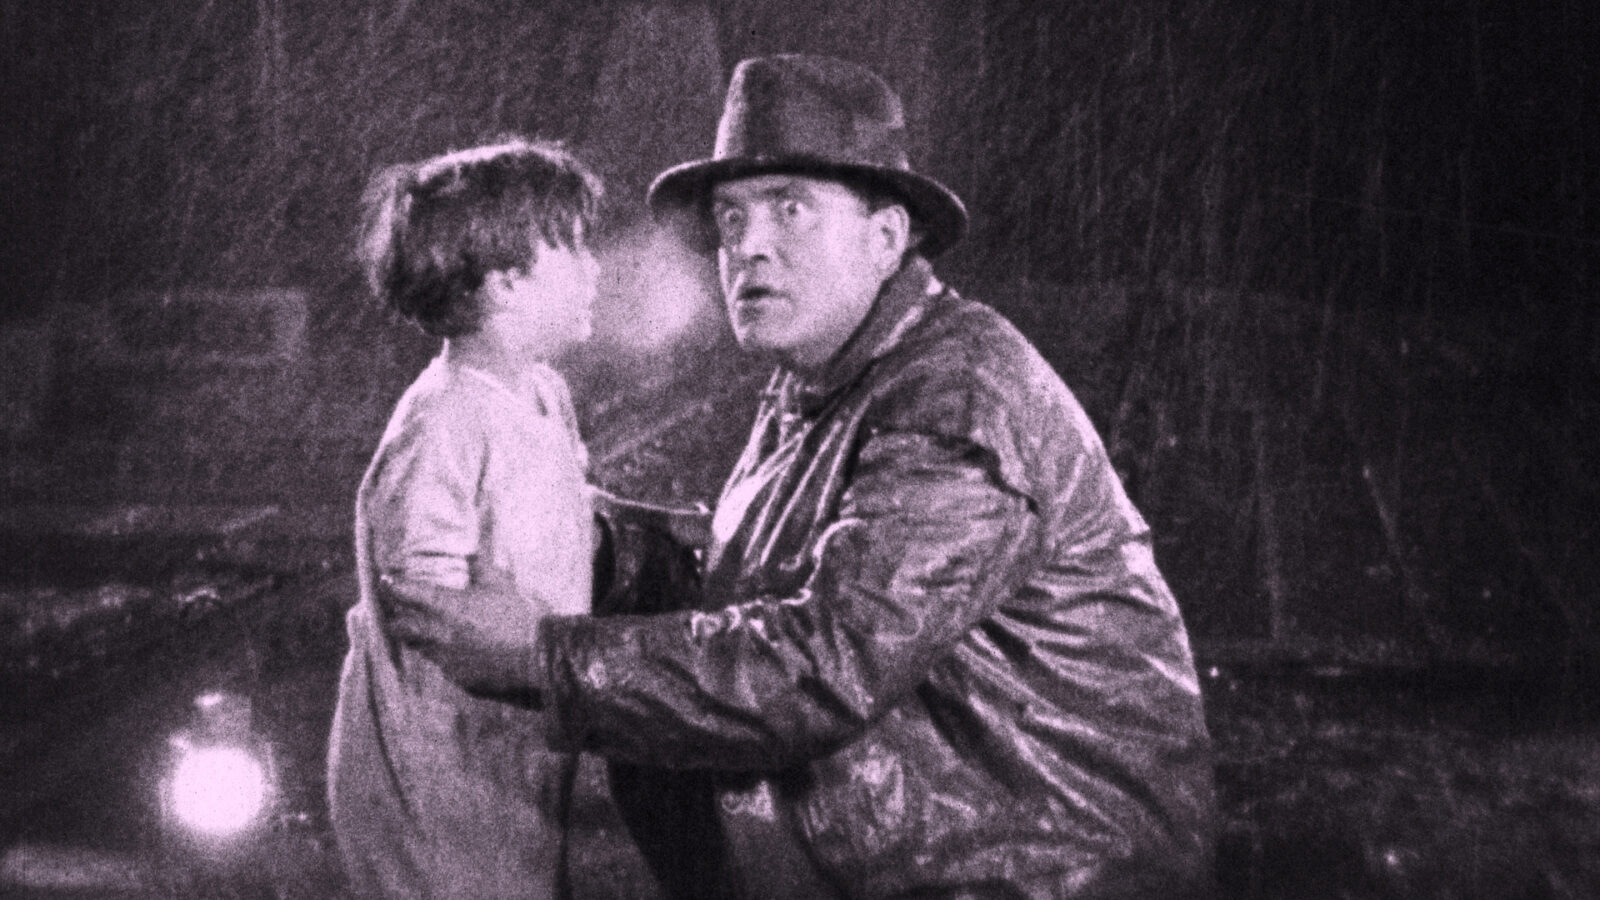 Eine Schwarz-Weiß-Aufnahme zeigt einen Mann in Lederjacke und Hut, der vor einem kleinen Jungen kniet, diesen an den Oberarmen hält.